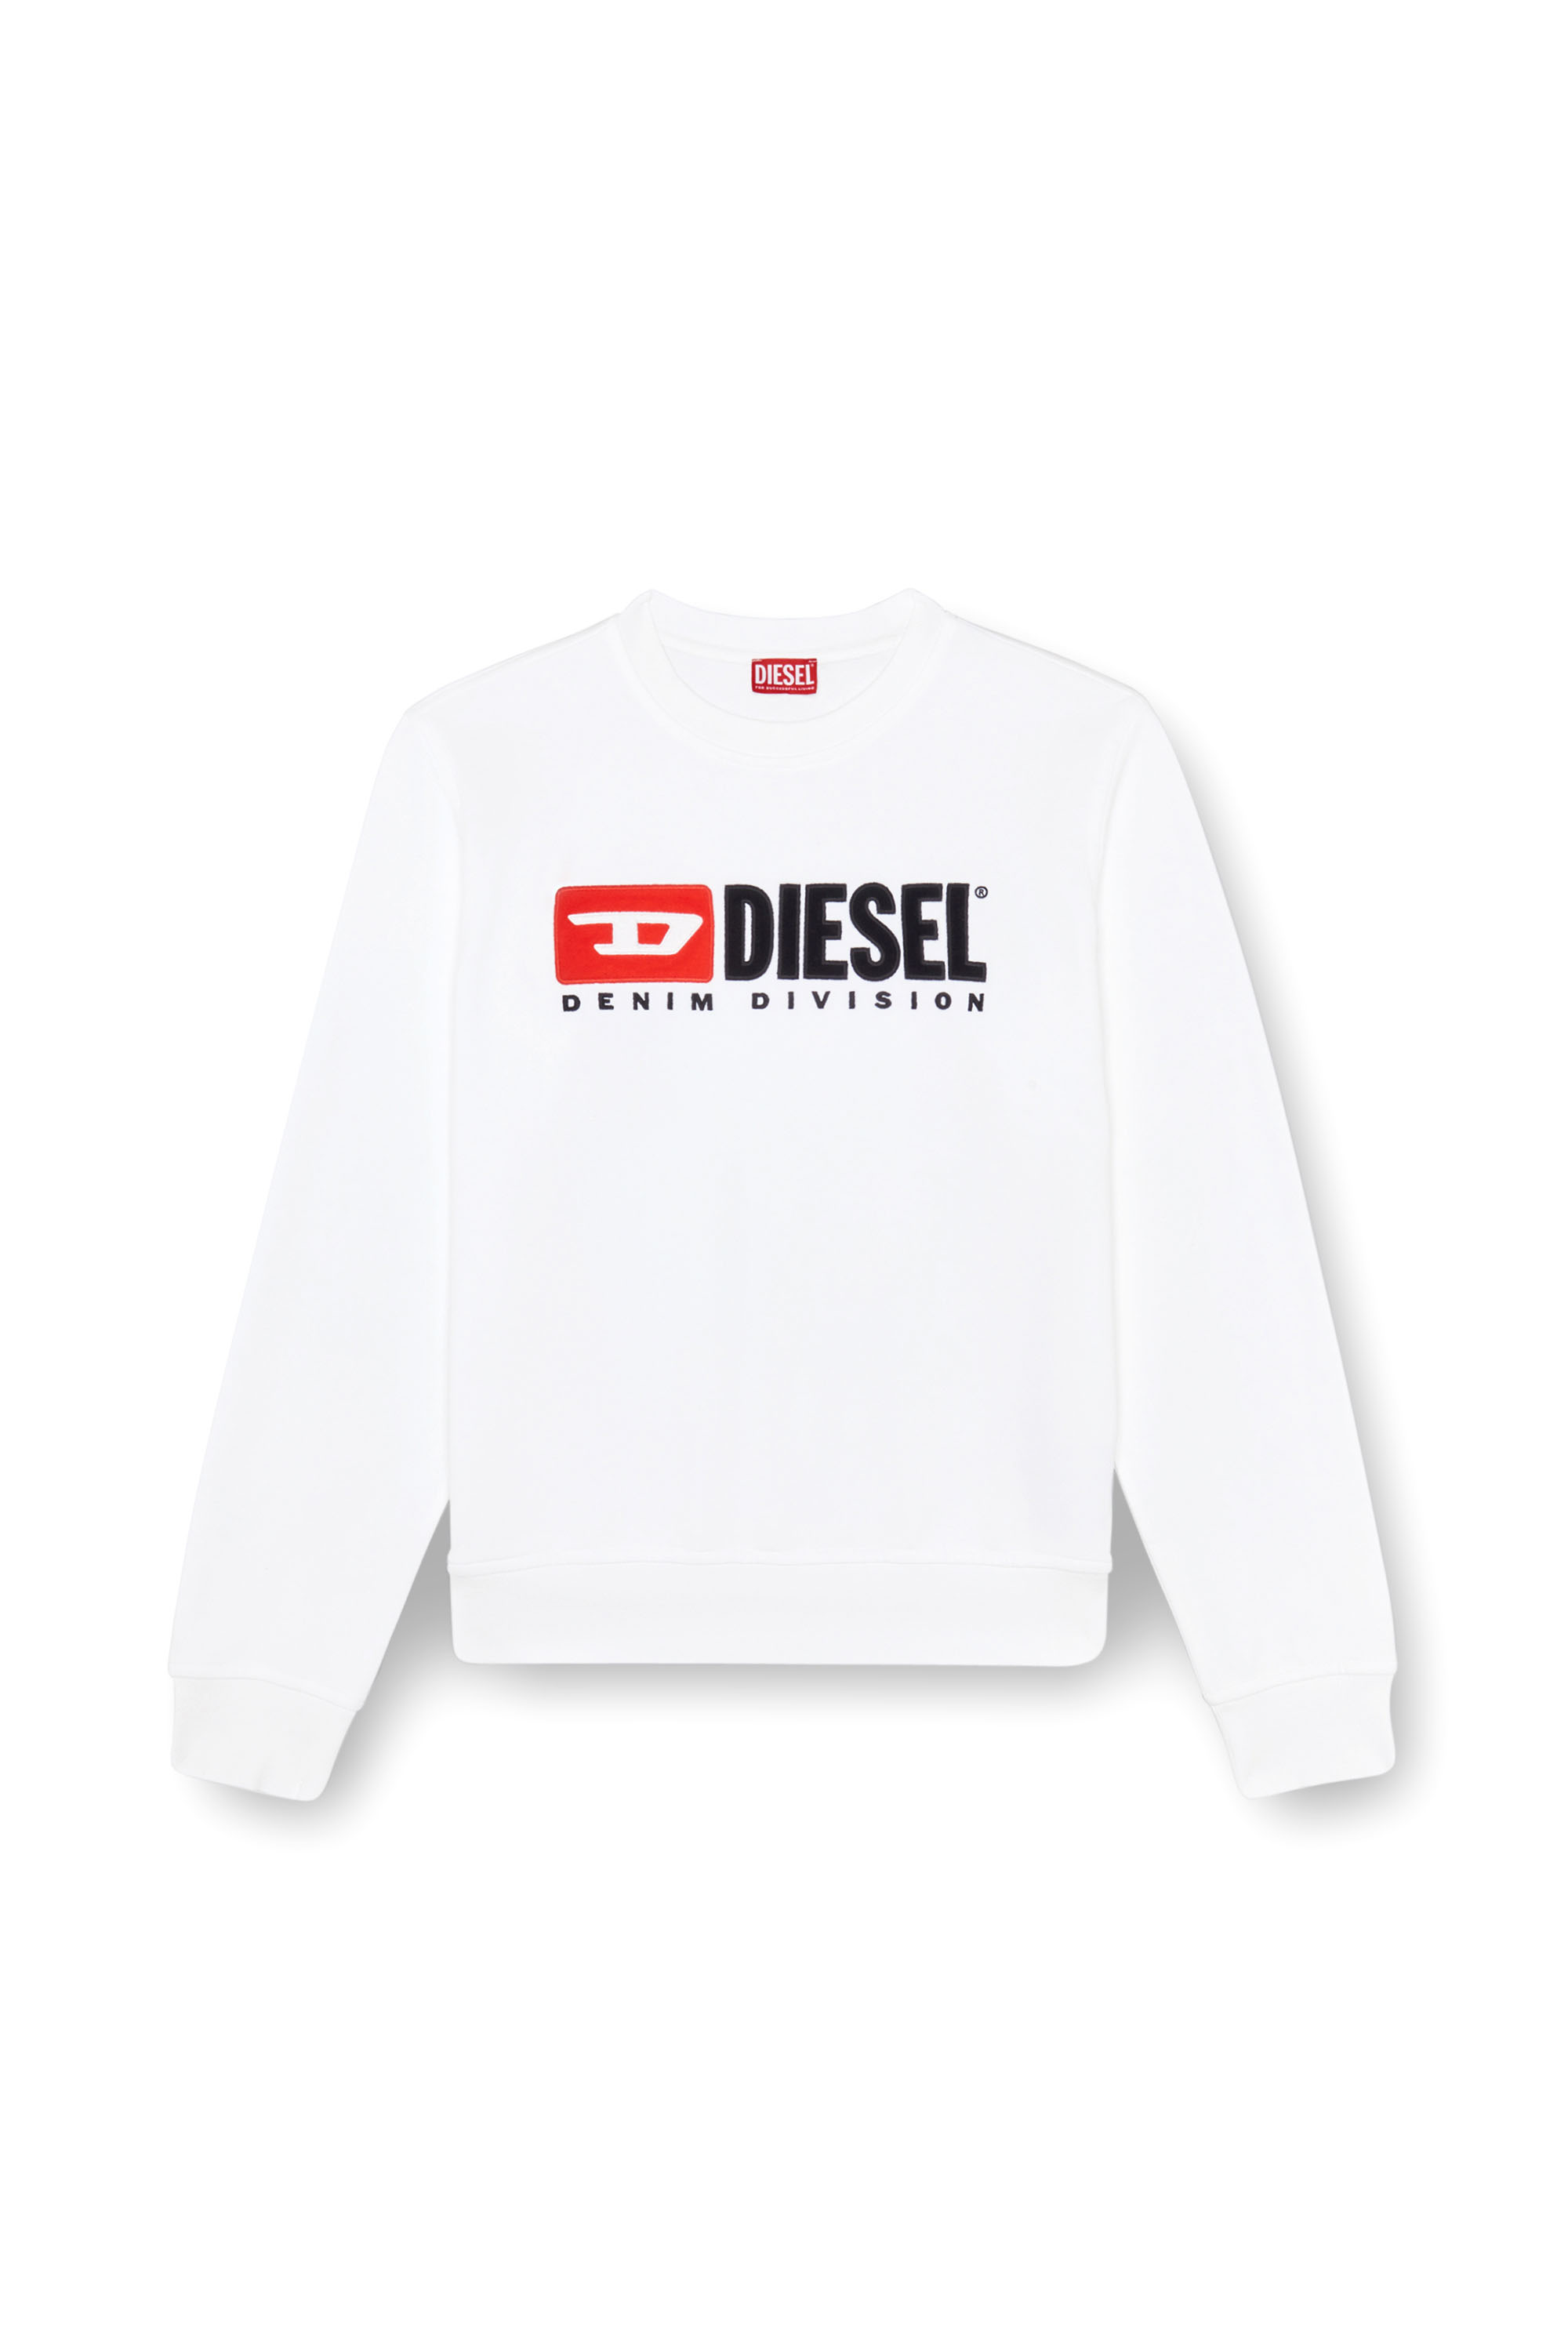 Diesel - S-BOXT-DIV, White - Image 3